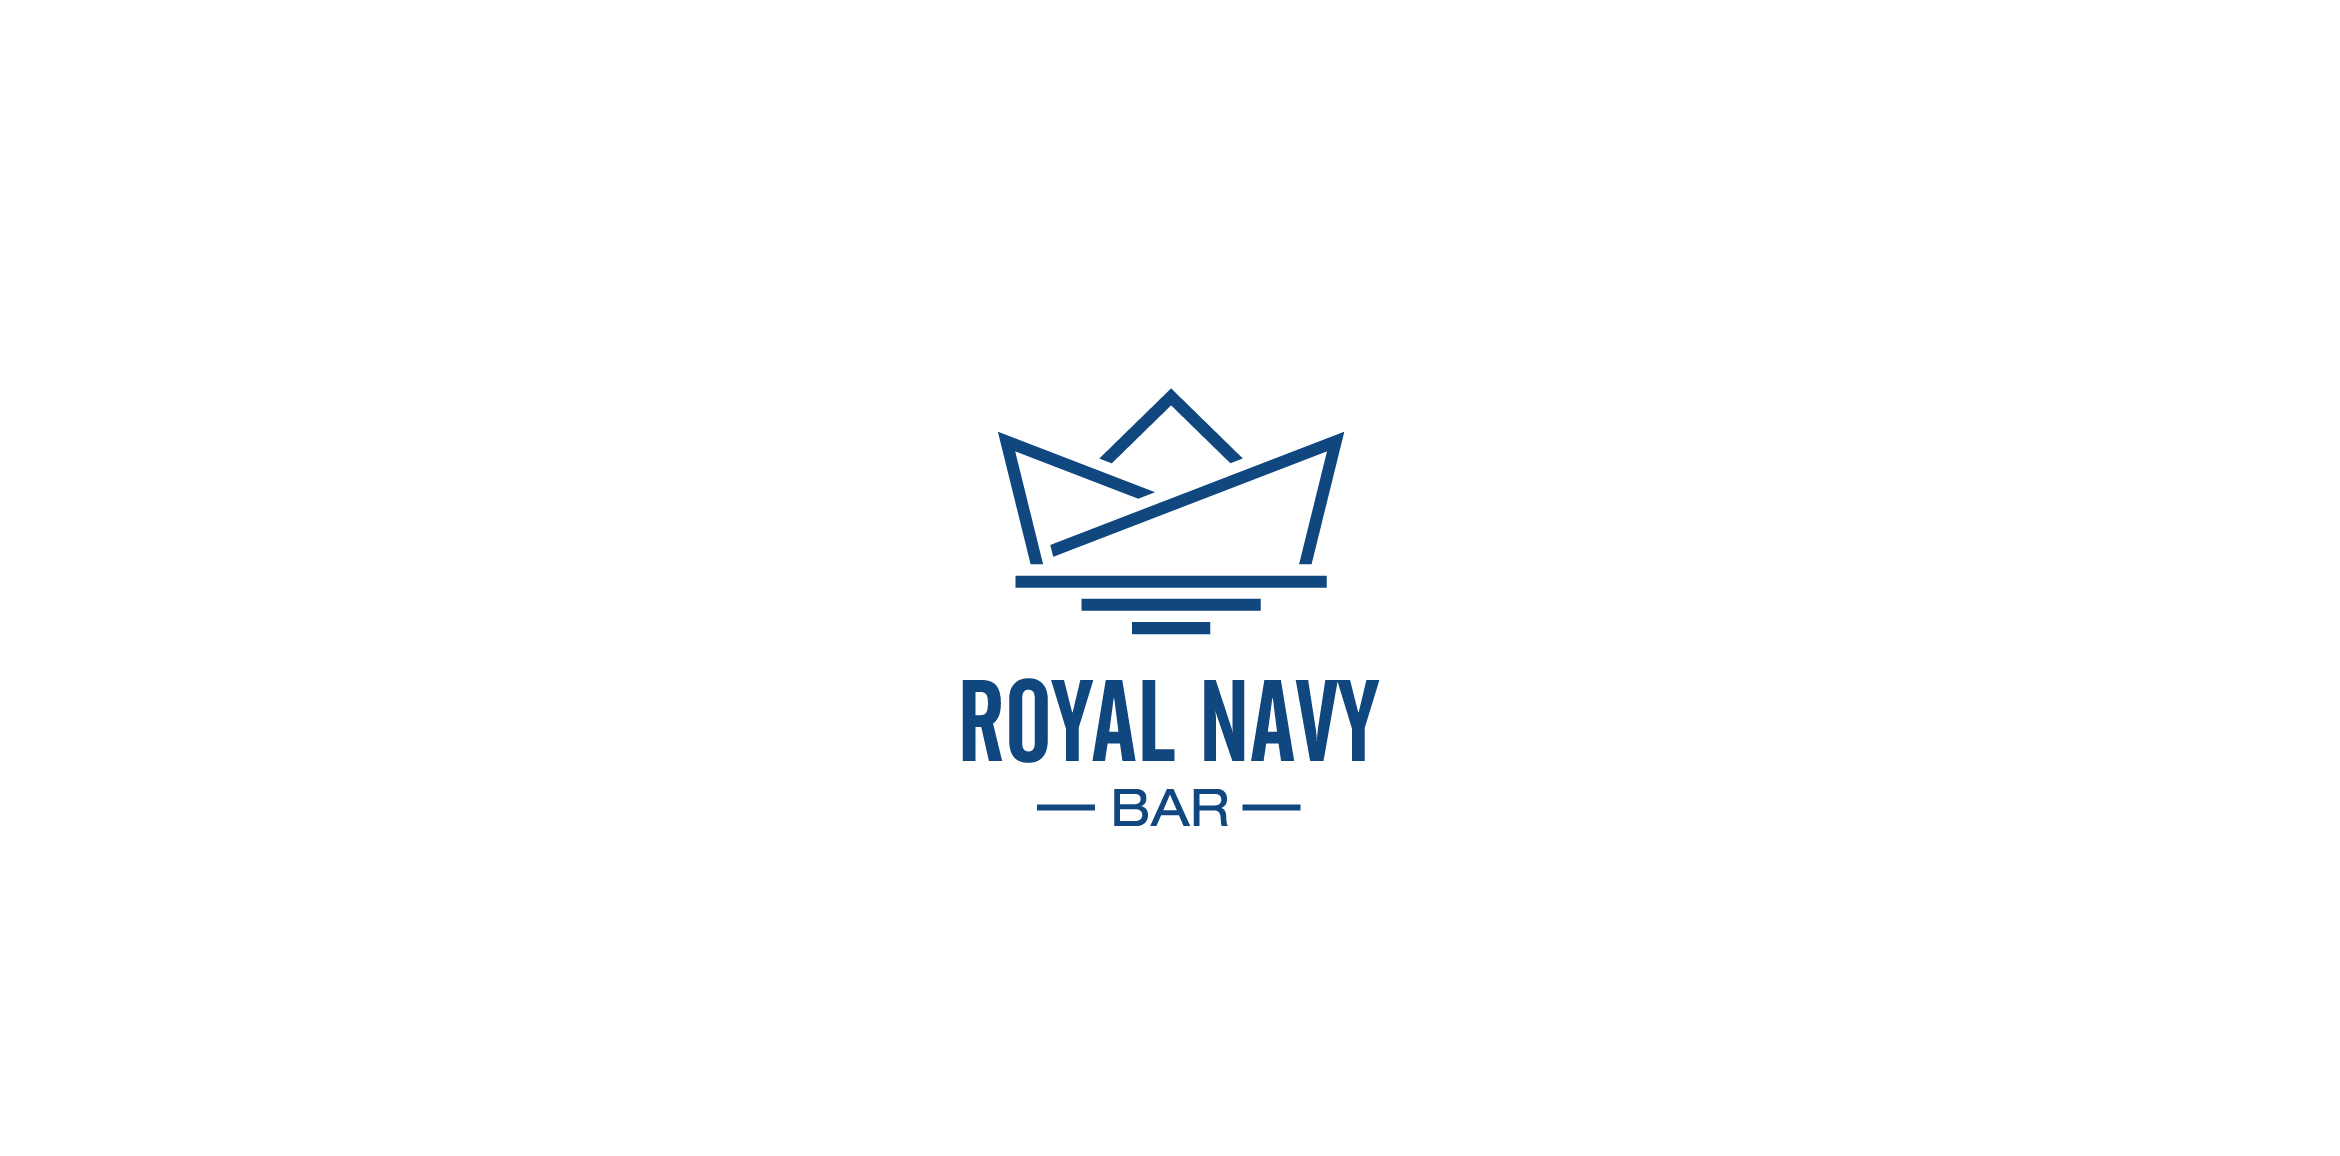 Royal Navy Bar